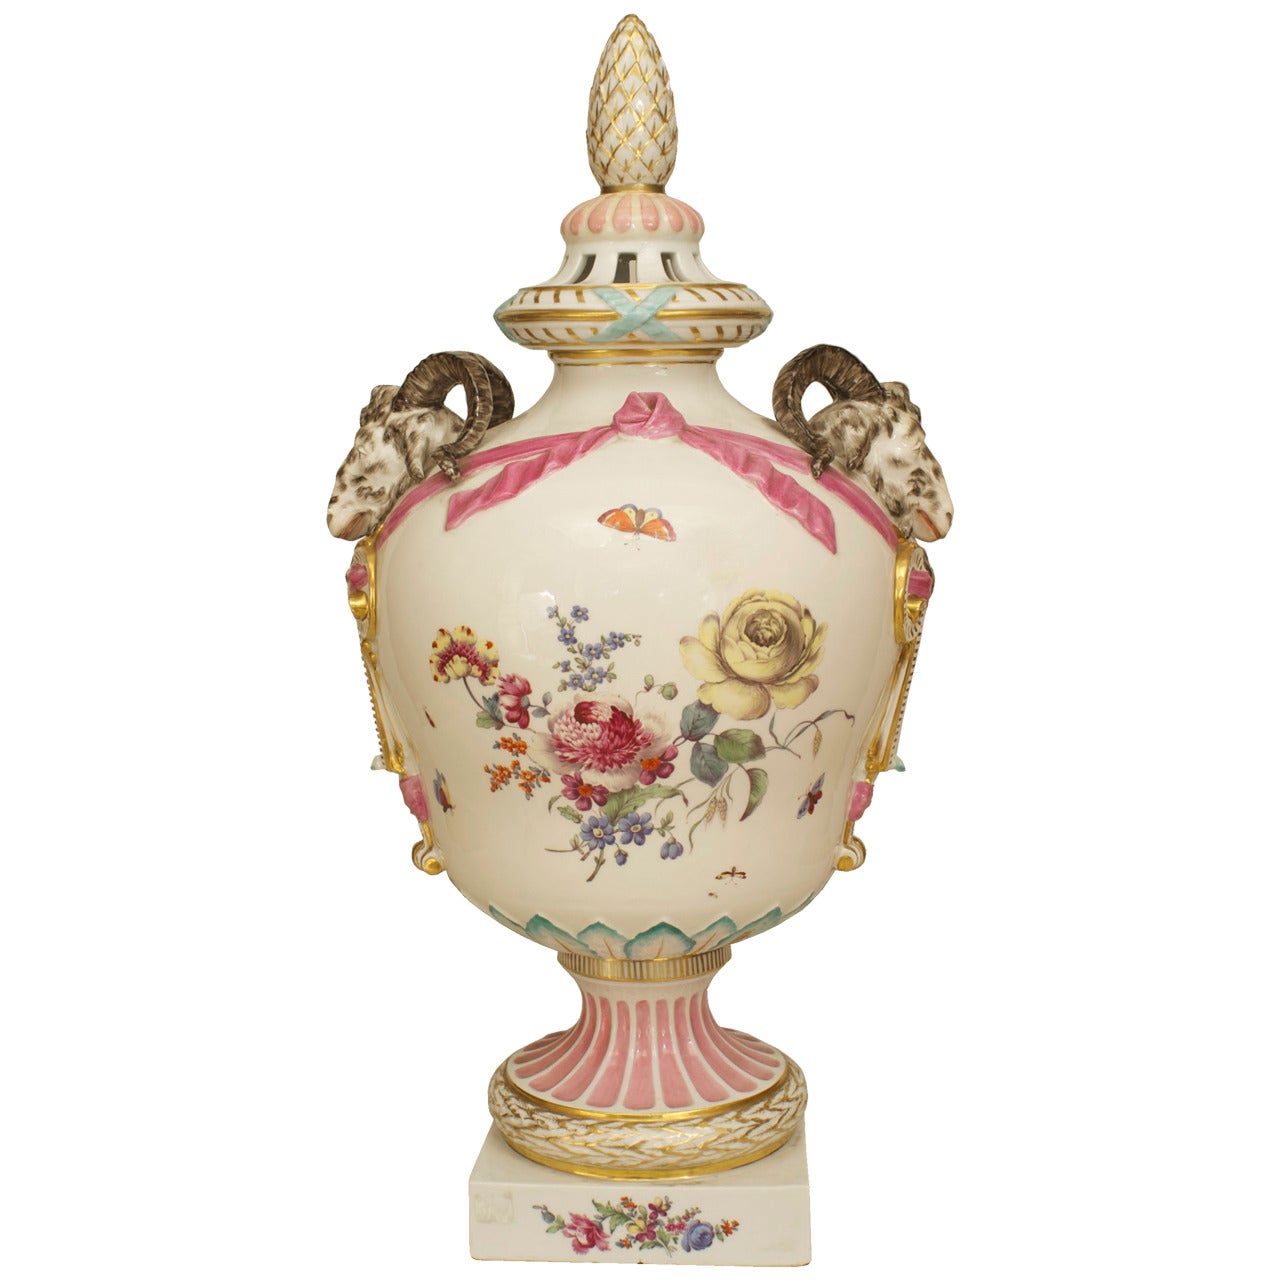 Une belle urne décorée en porcelaine allemande continentale du XVIIIe siècle